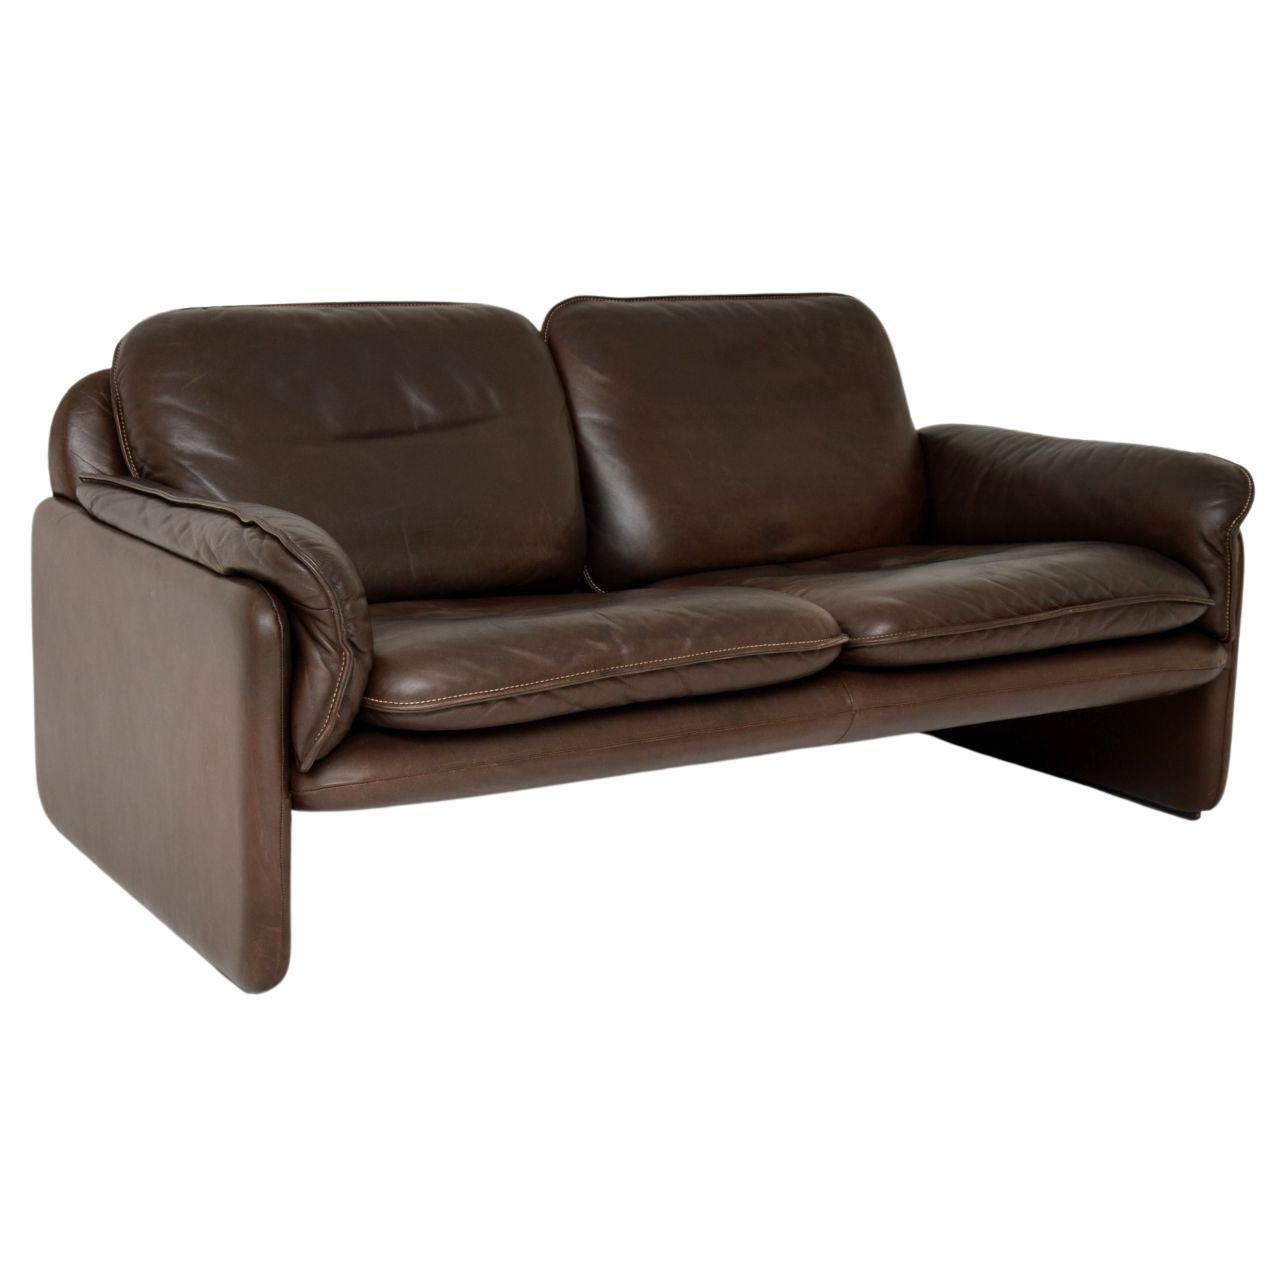 1960's, Vintage Leather De Sede Ds 61 Sofa